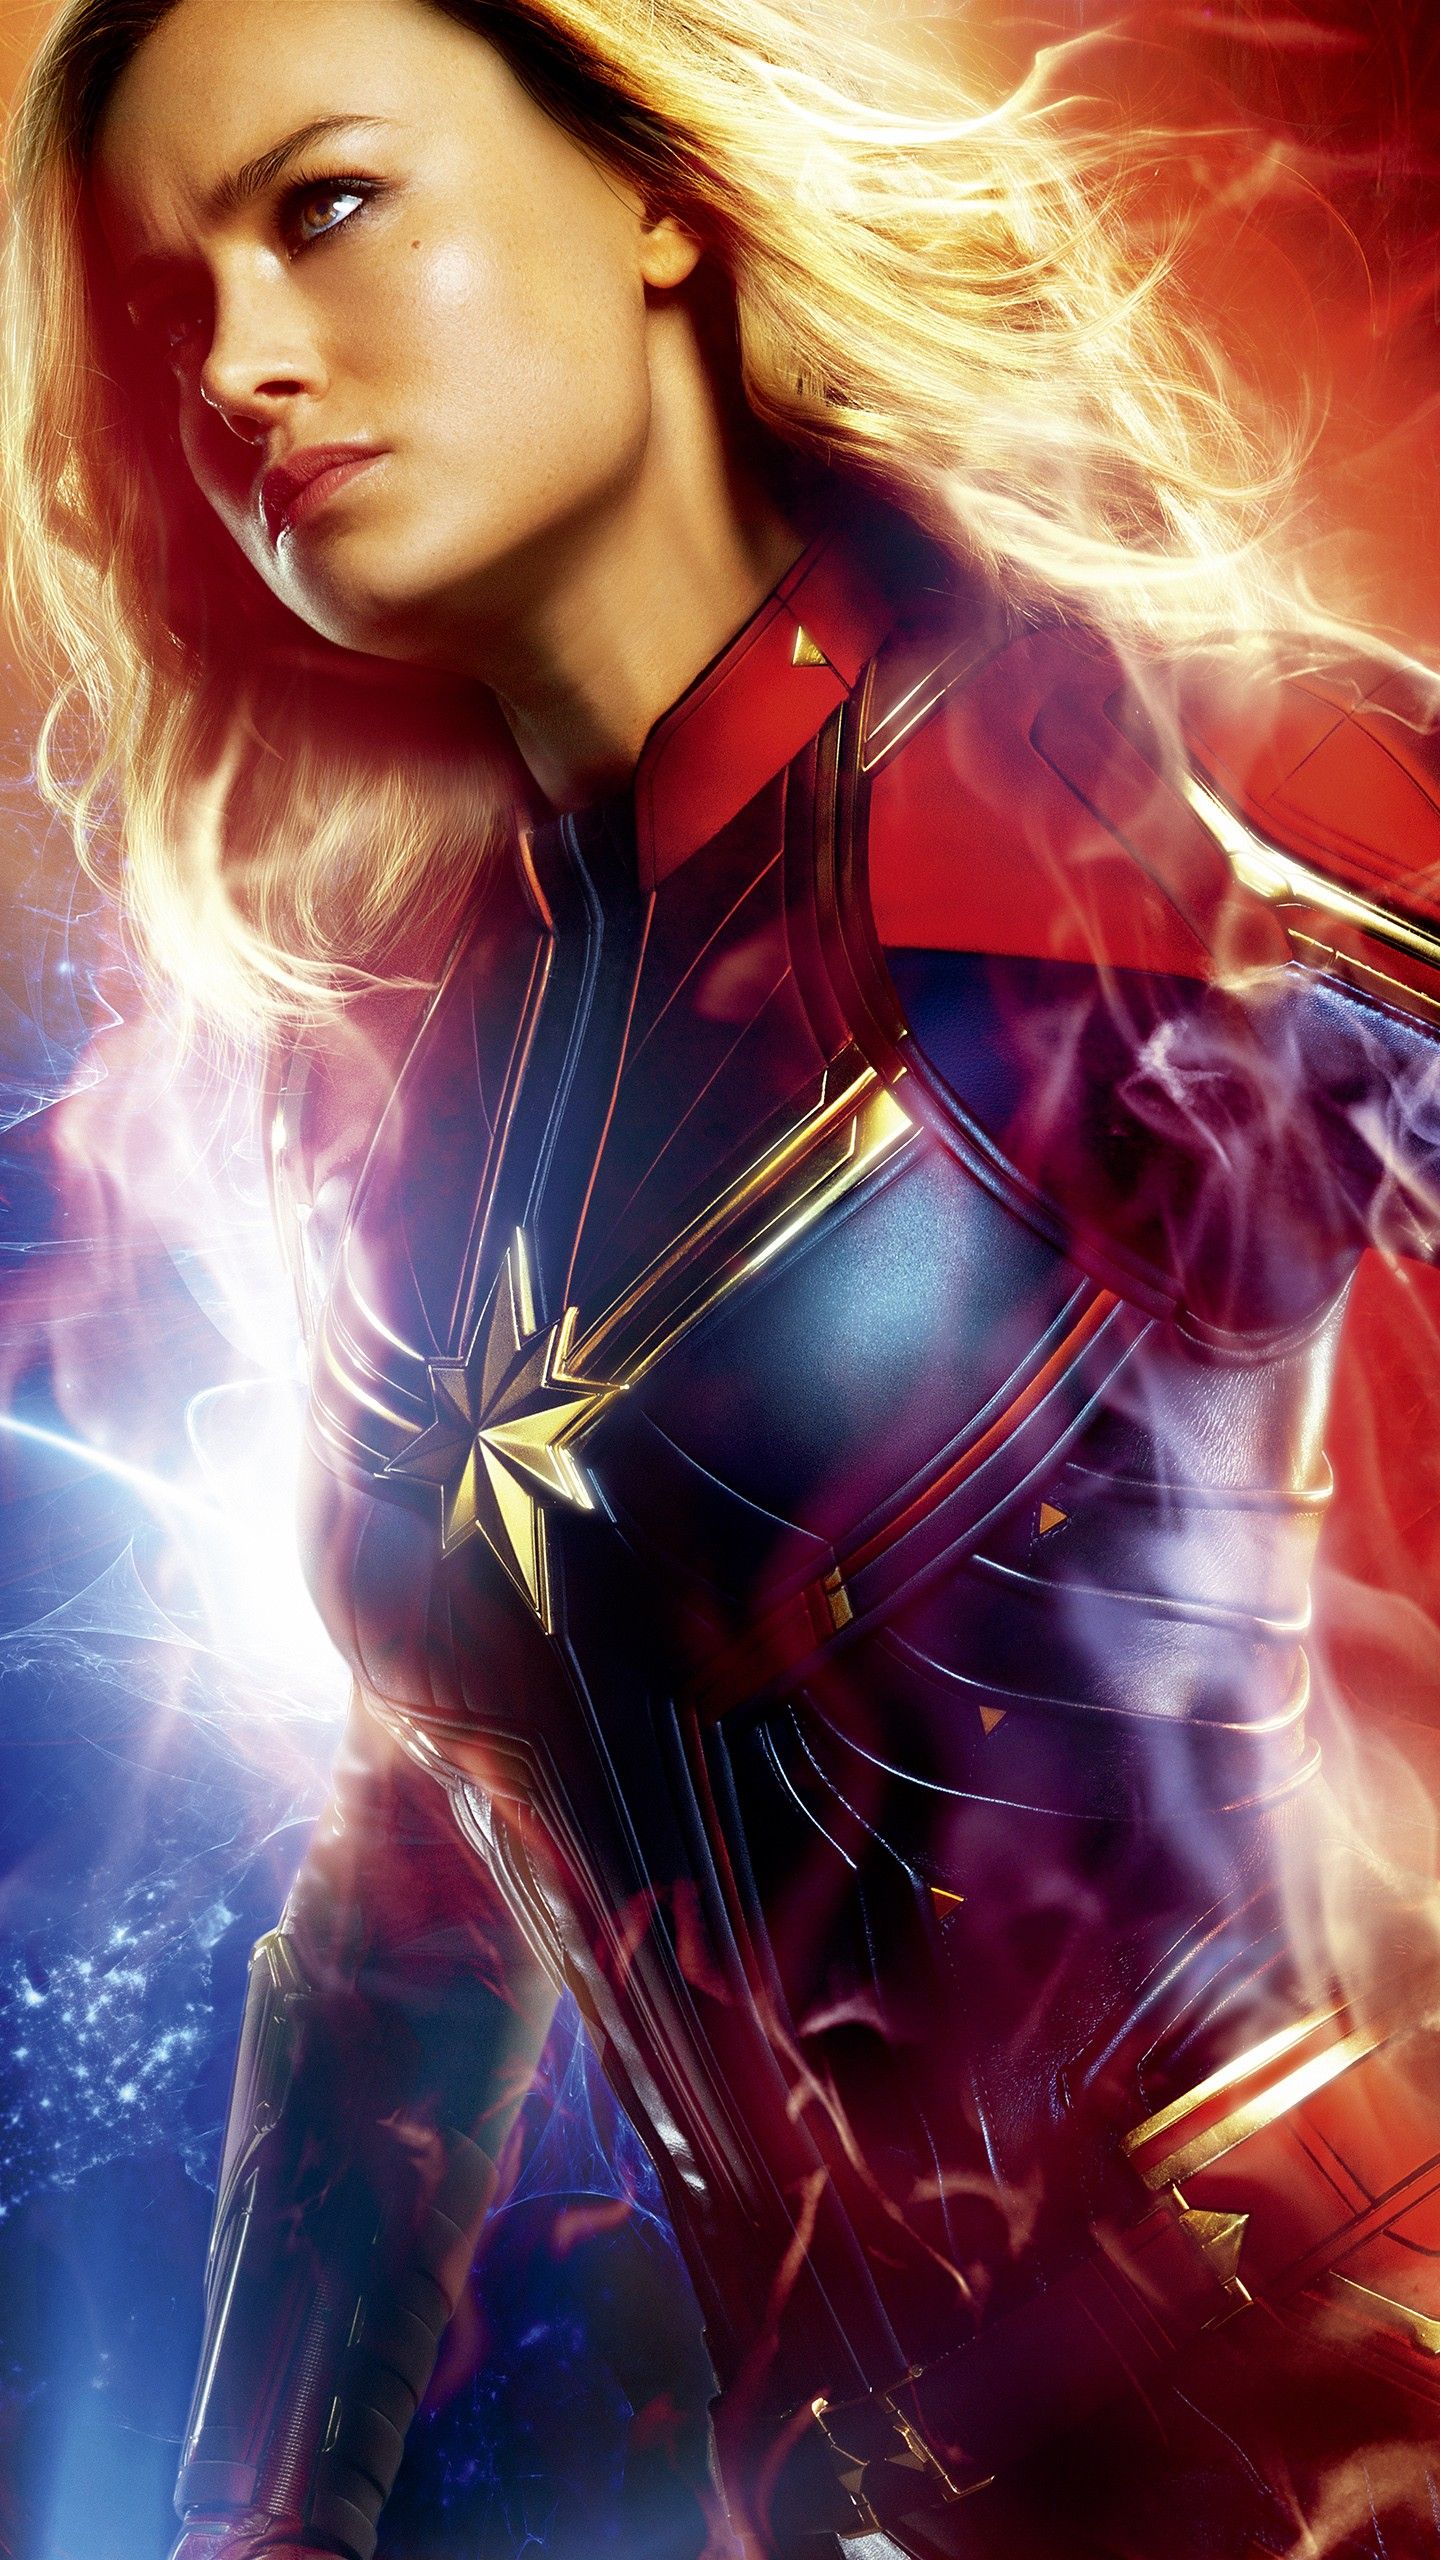 Brie Larson As Captain Marvel Artwork Wallpapers